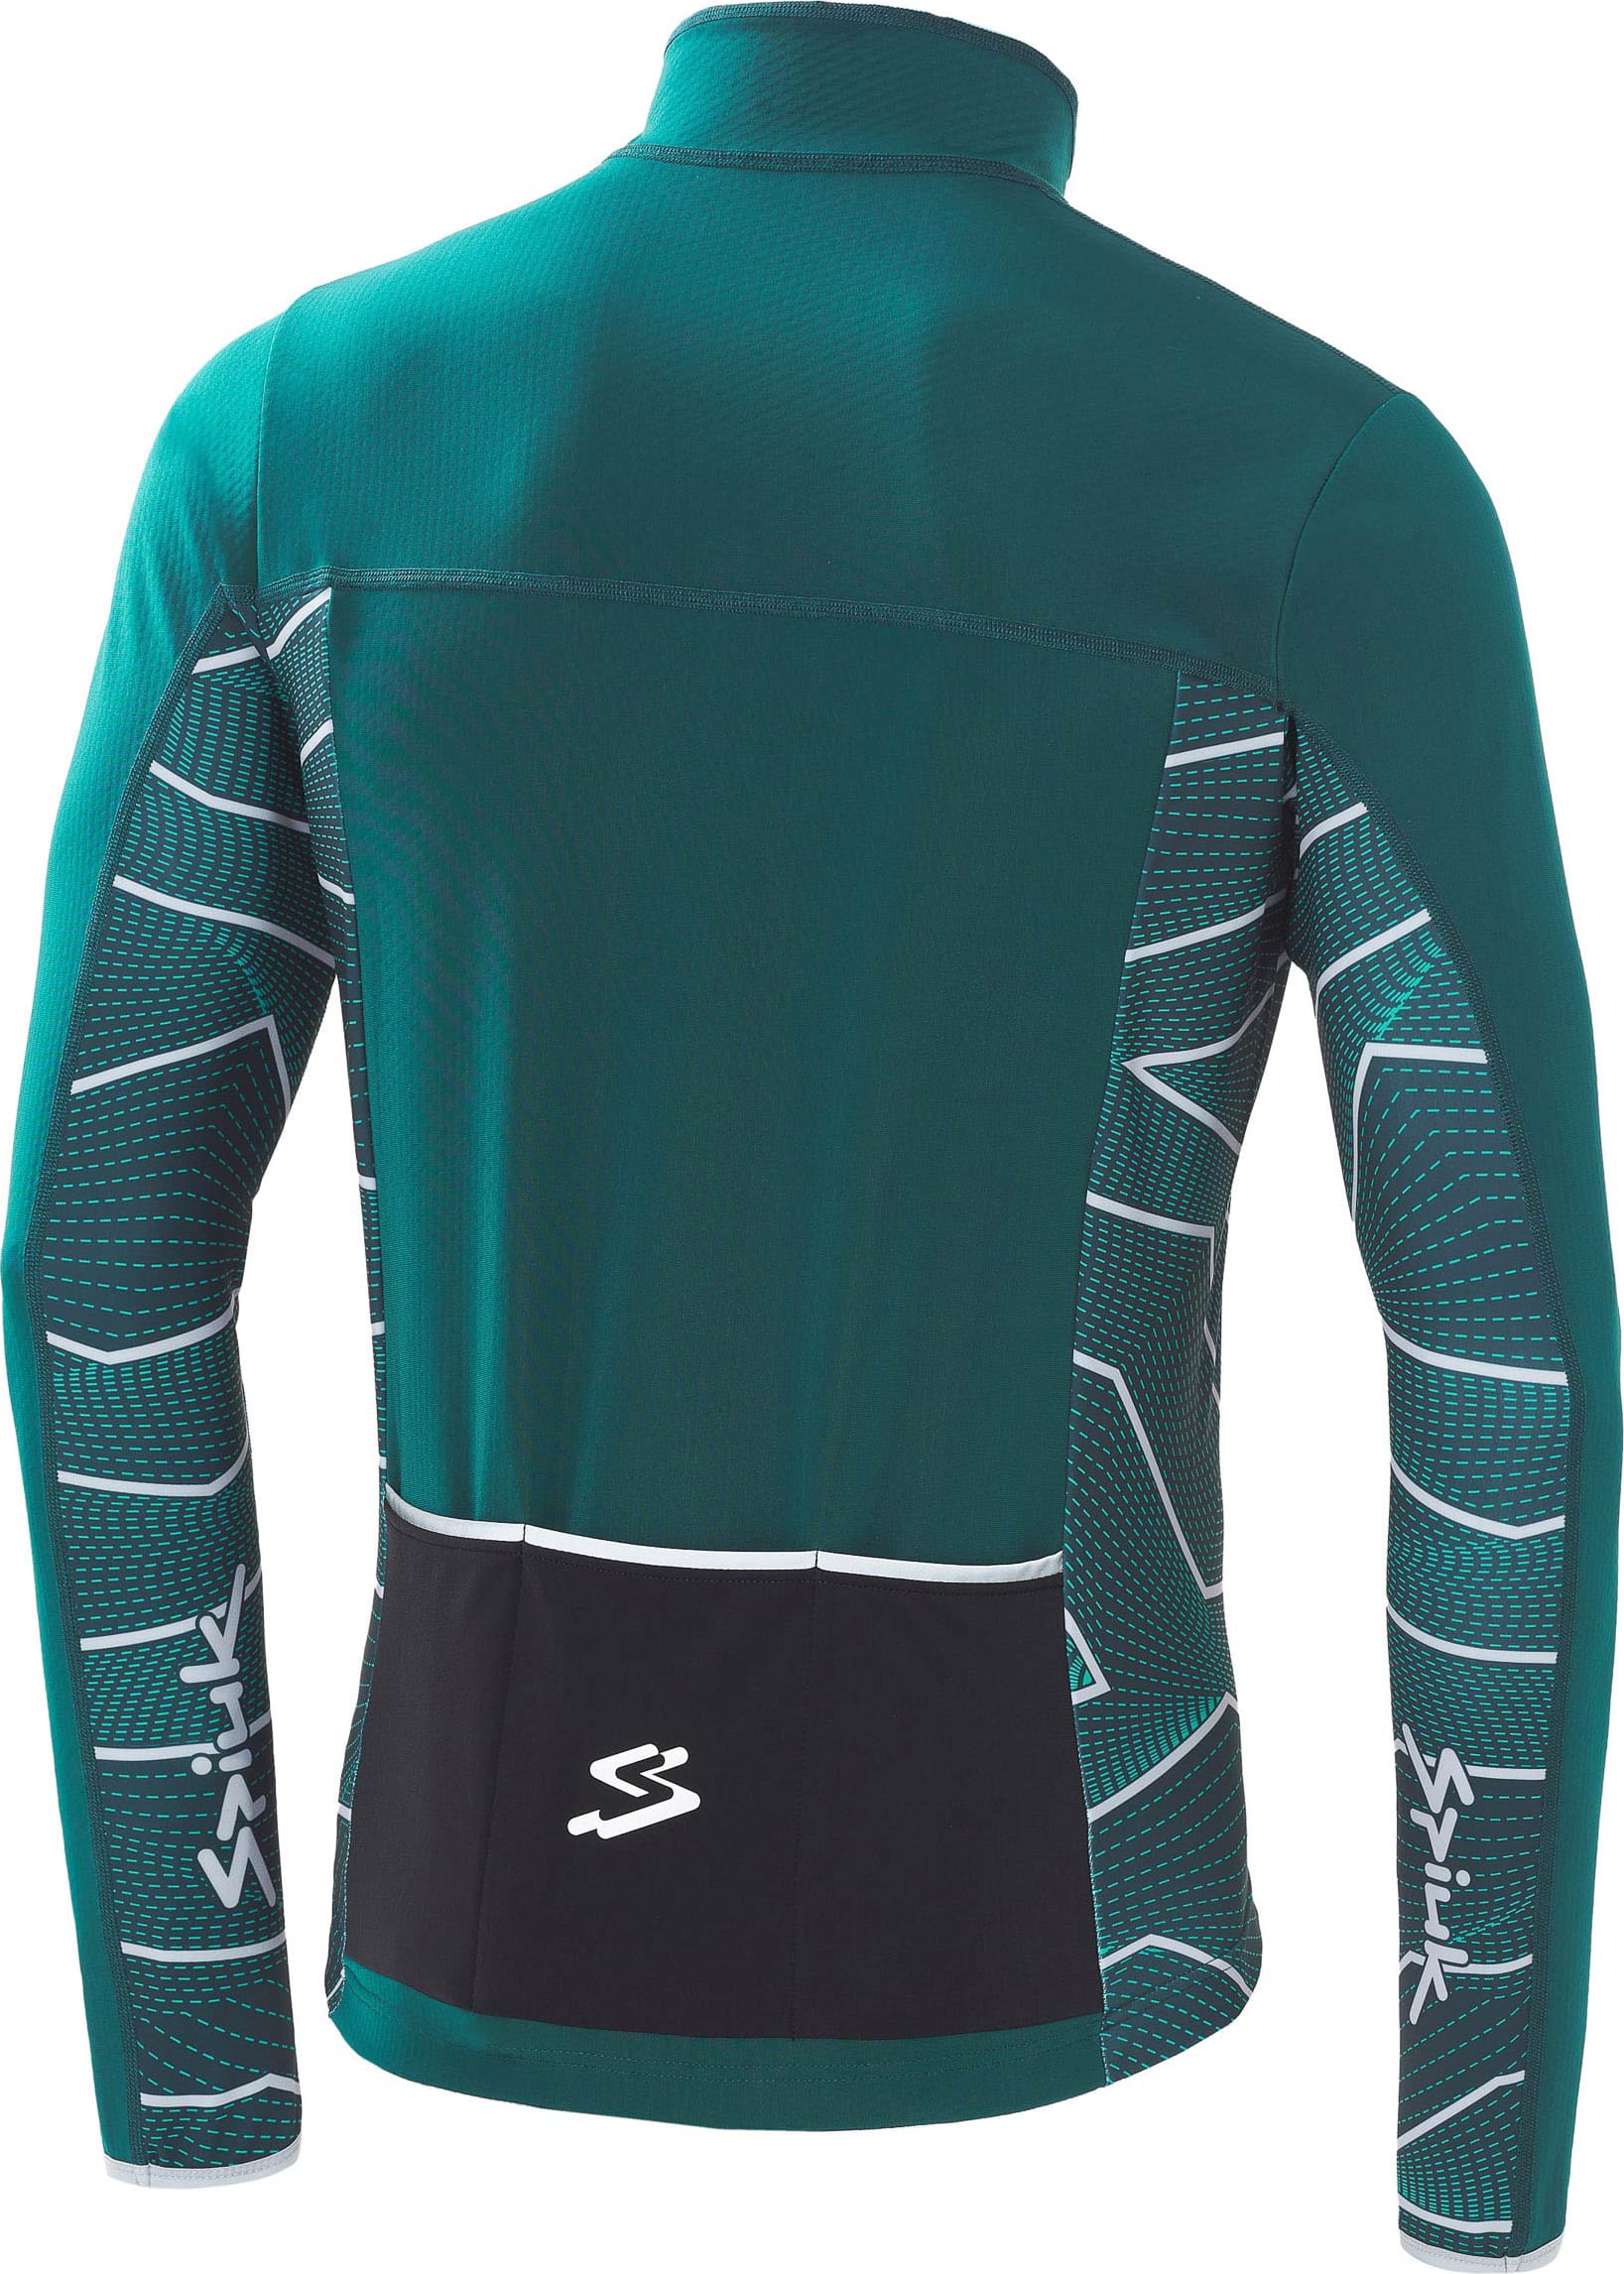 Куртка Spiuk Boreas Light Membrane мужская зеленая XL фото 2